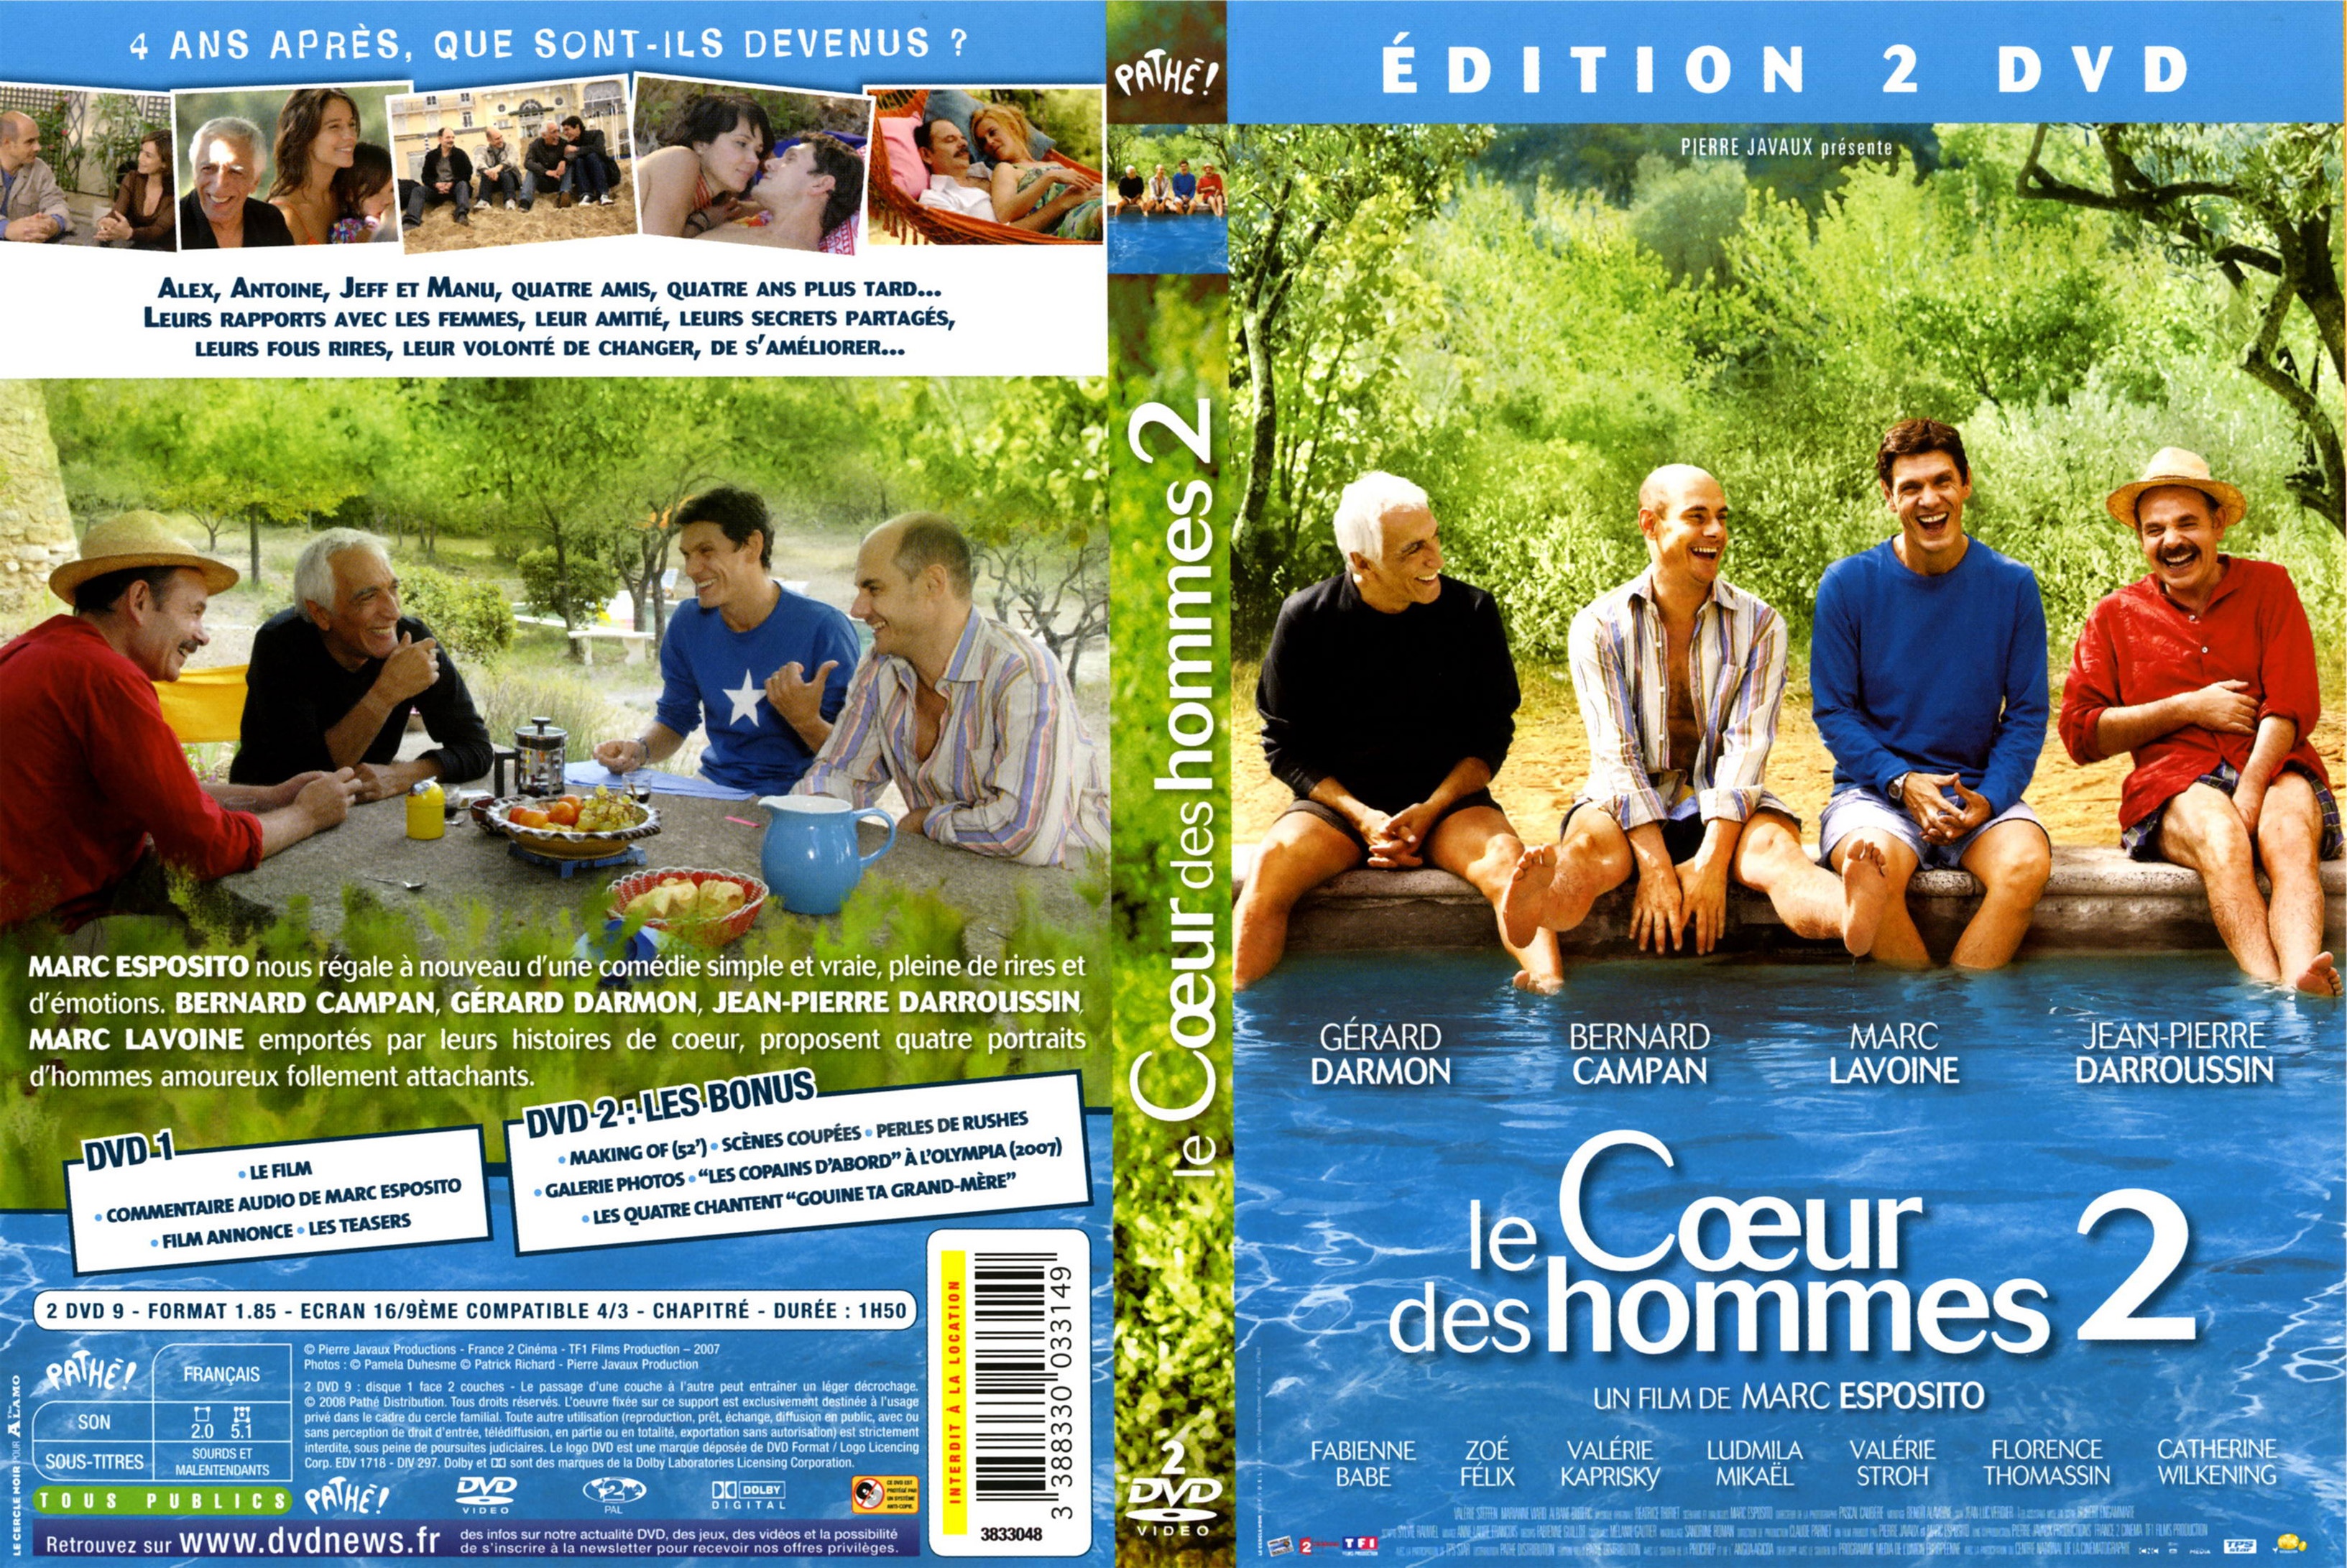 Jaquette DVD Le coeur des hommes 2 v2